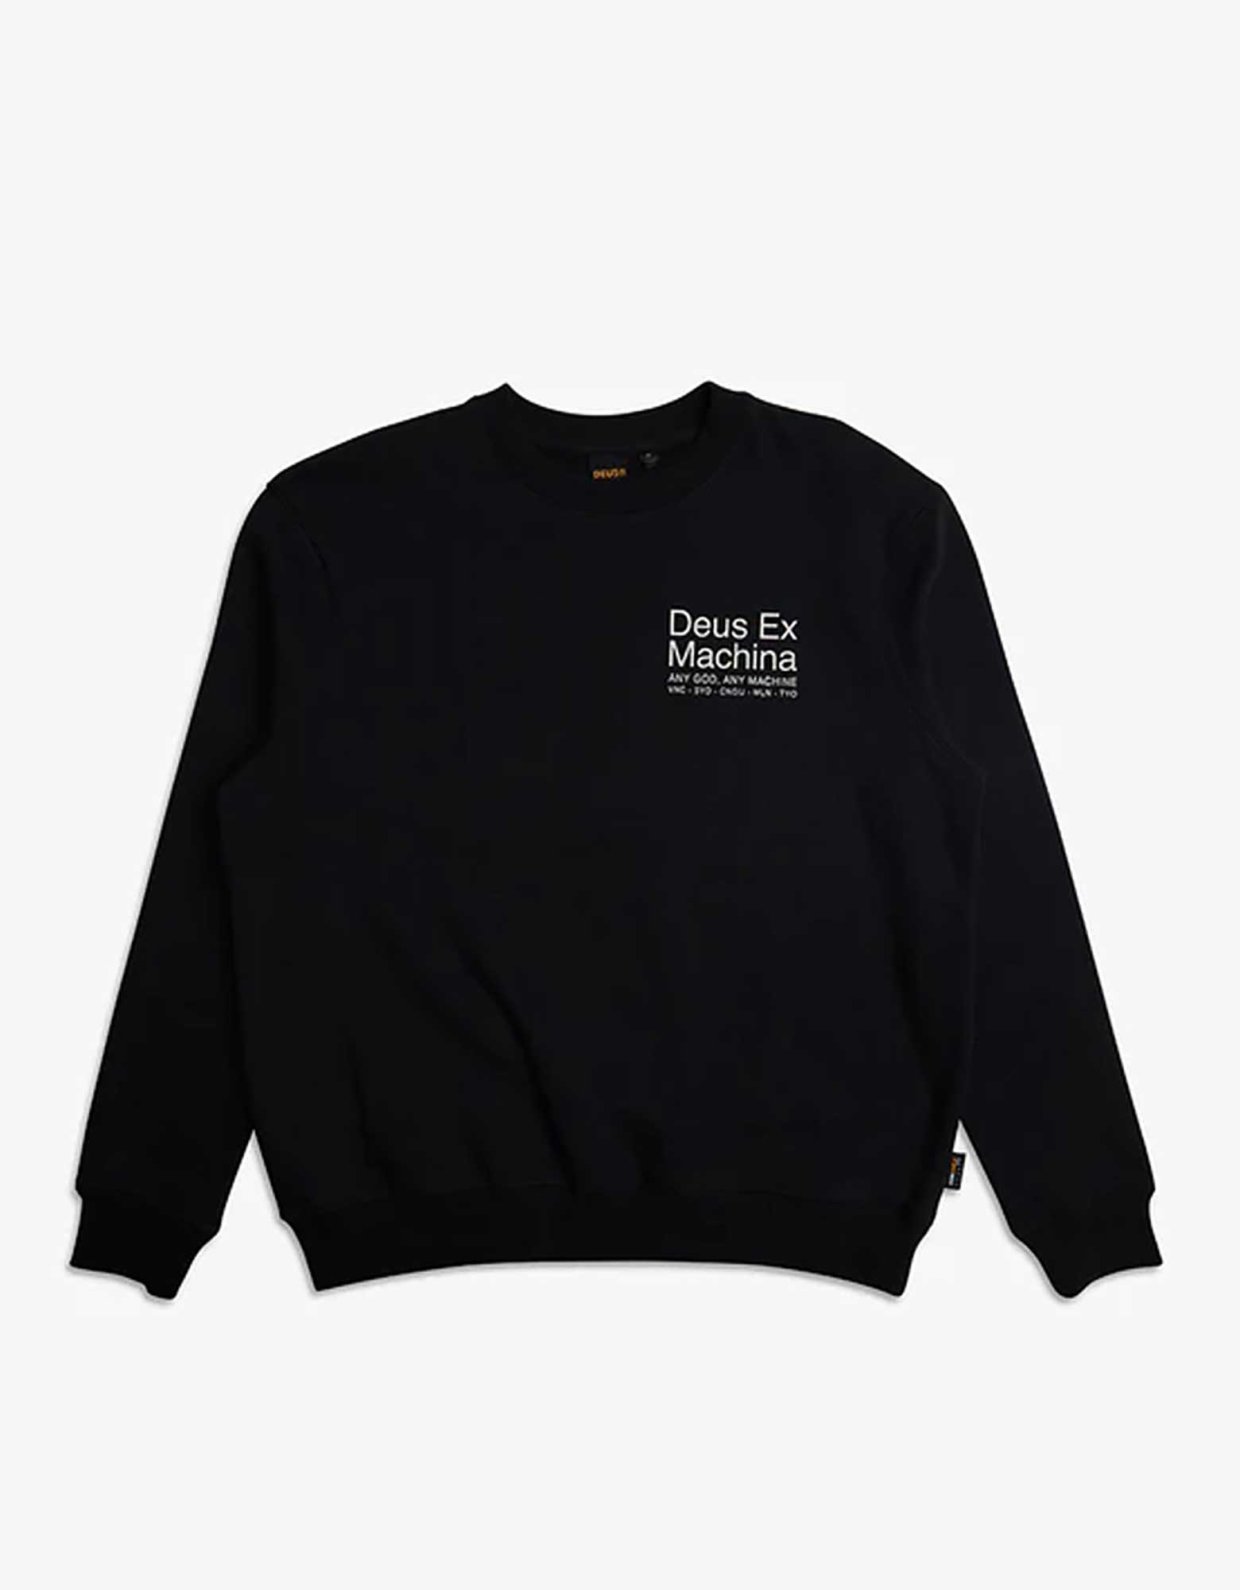 Deus Ex Machina Zoning crew neck sweater black